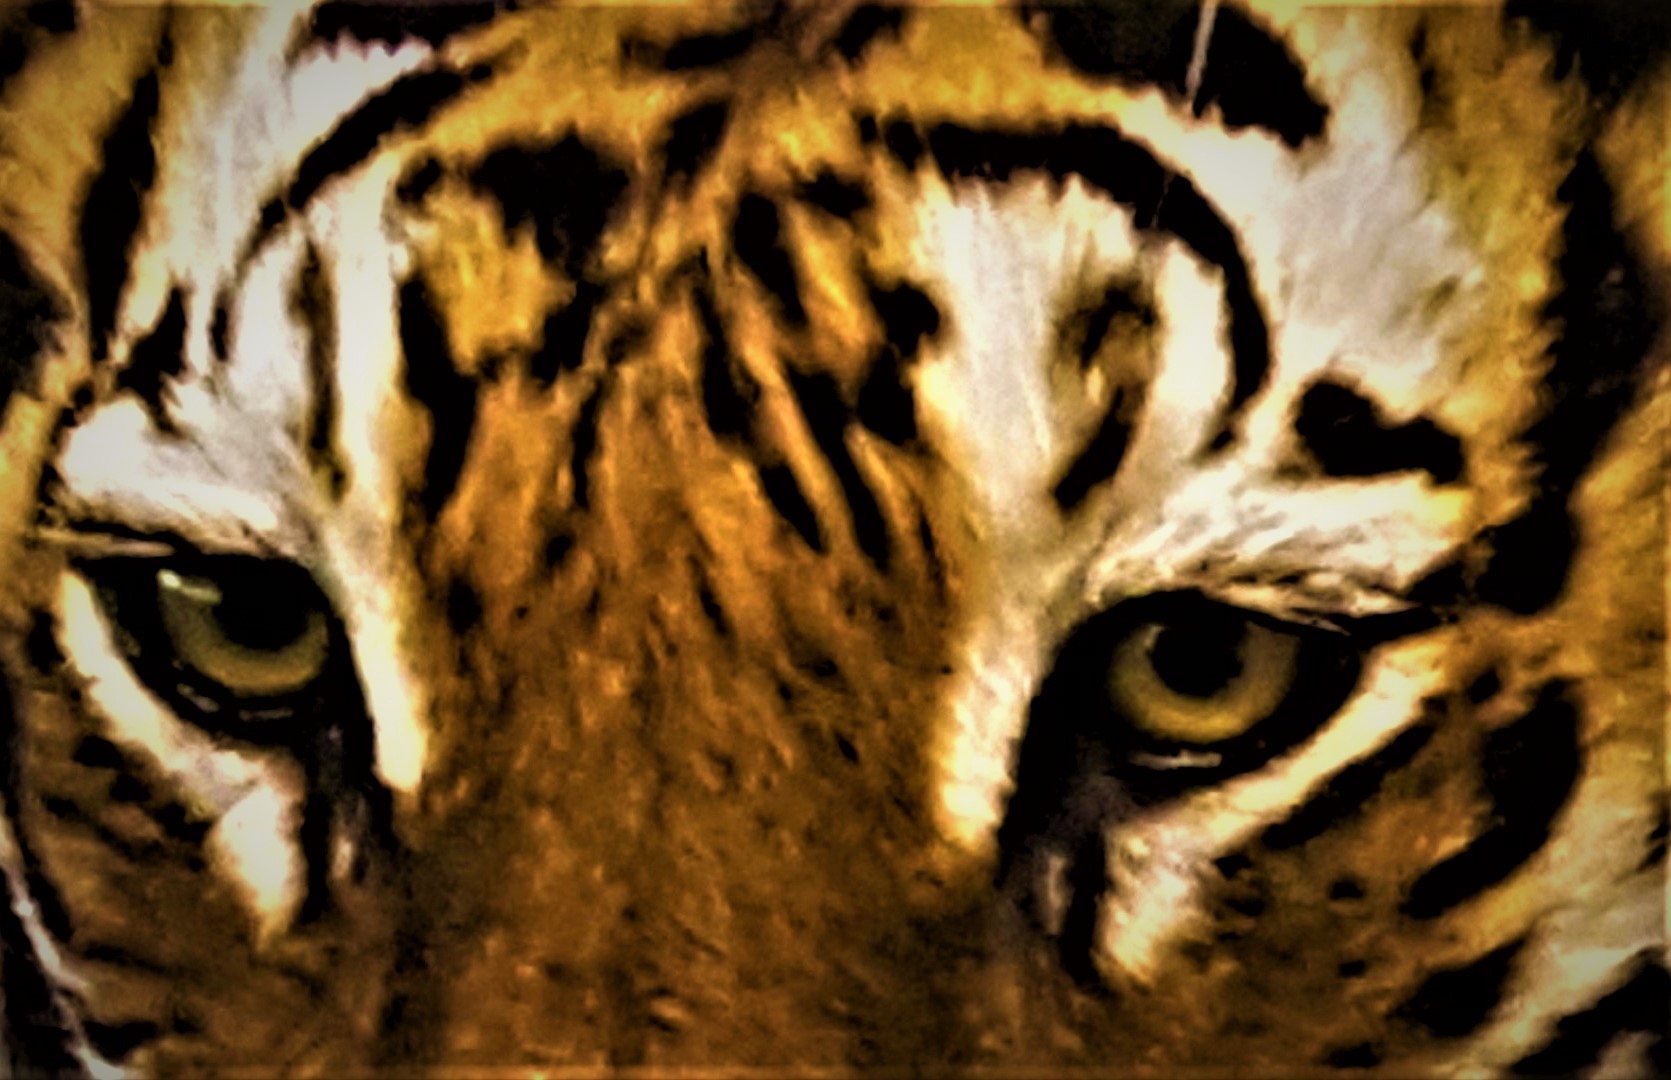 Slika, ki vsebuje besede mačka, sesalec, gledanje, tiger

Opis je samodejno ustvarjen